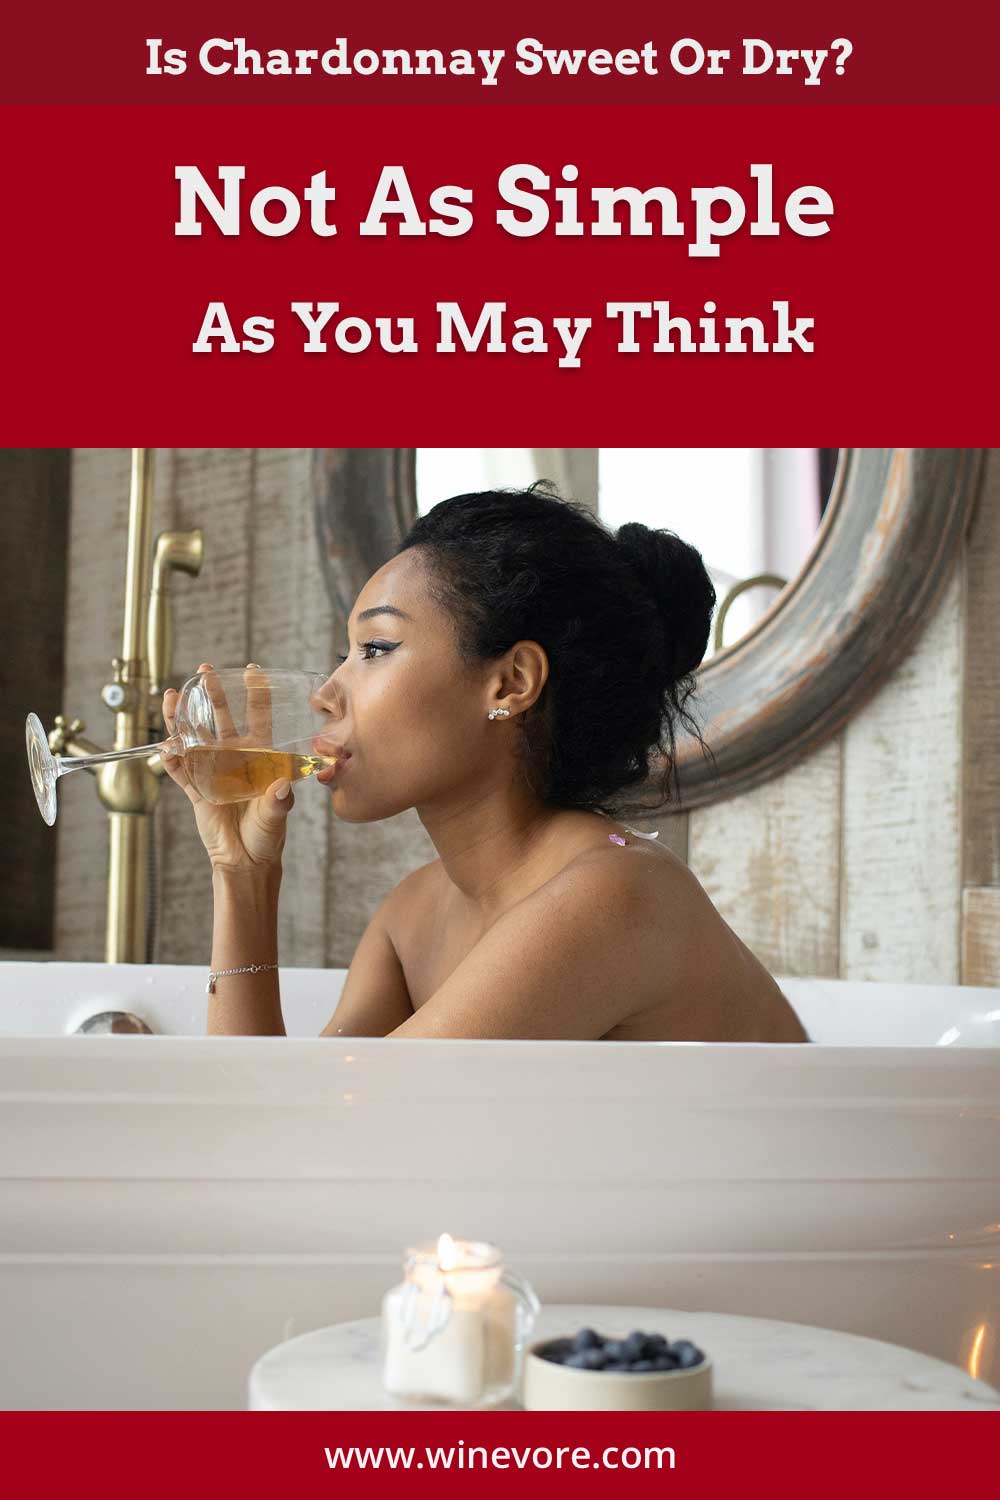 Woman drinking chardonnay sitting in a bath tub - is it sweet or dry?